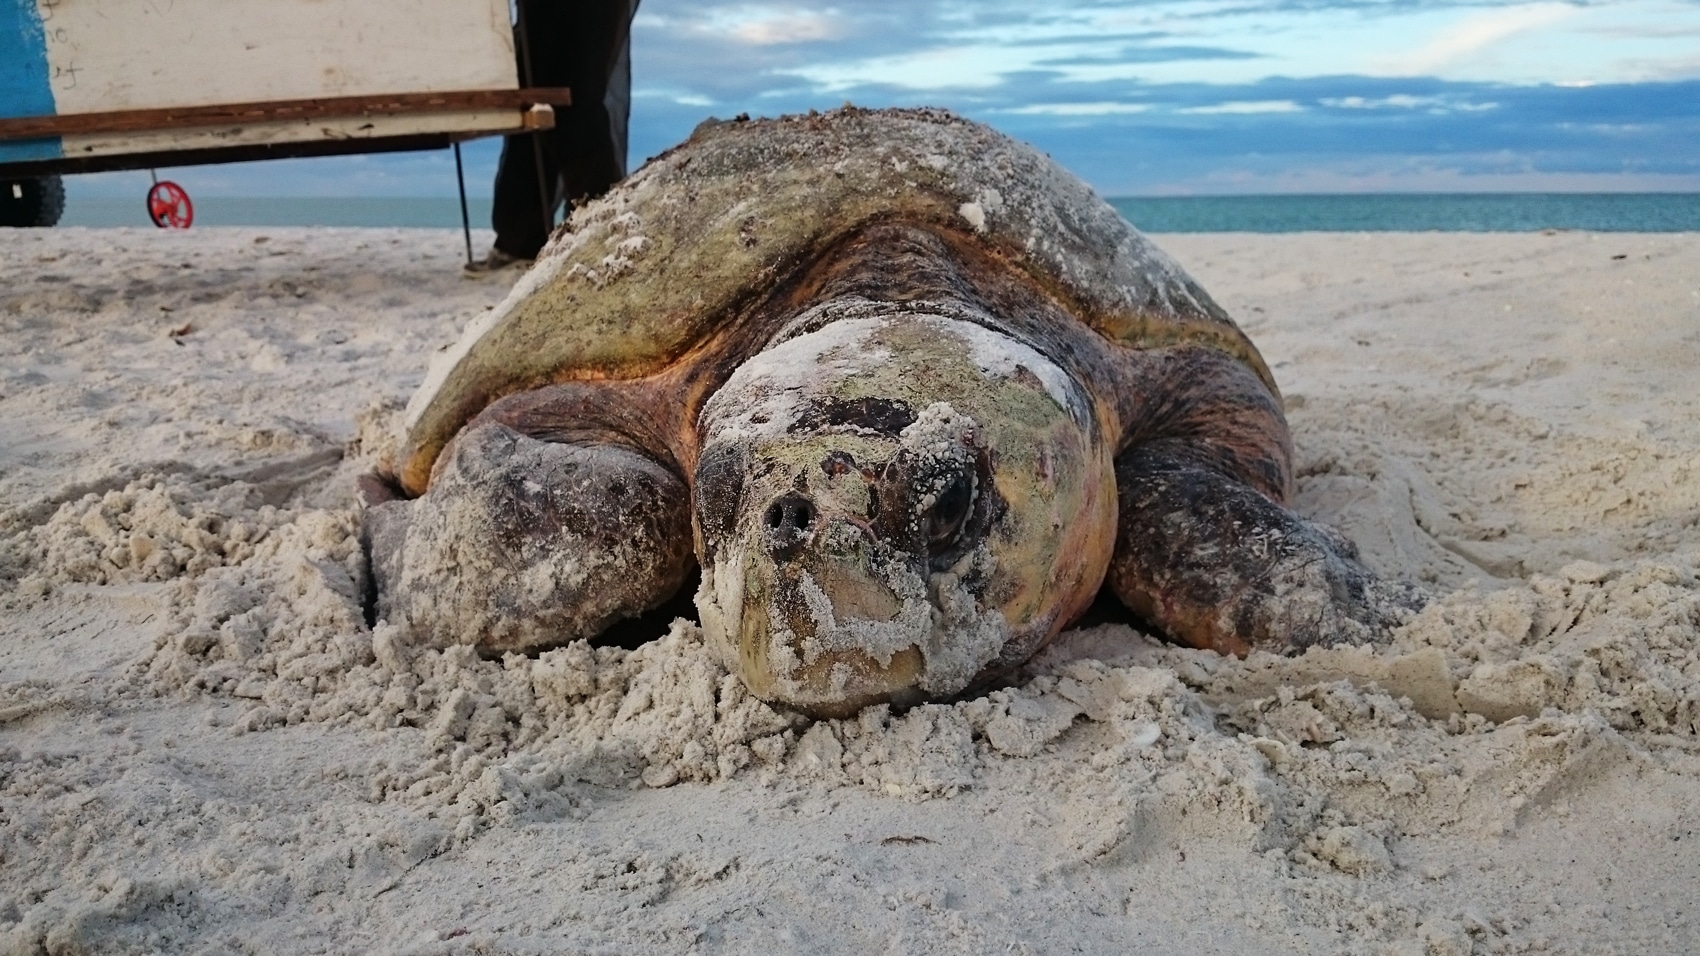 Nesting loggerhead sea turtle on Keewaydin Island